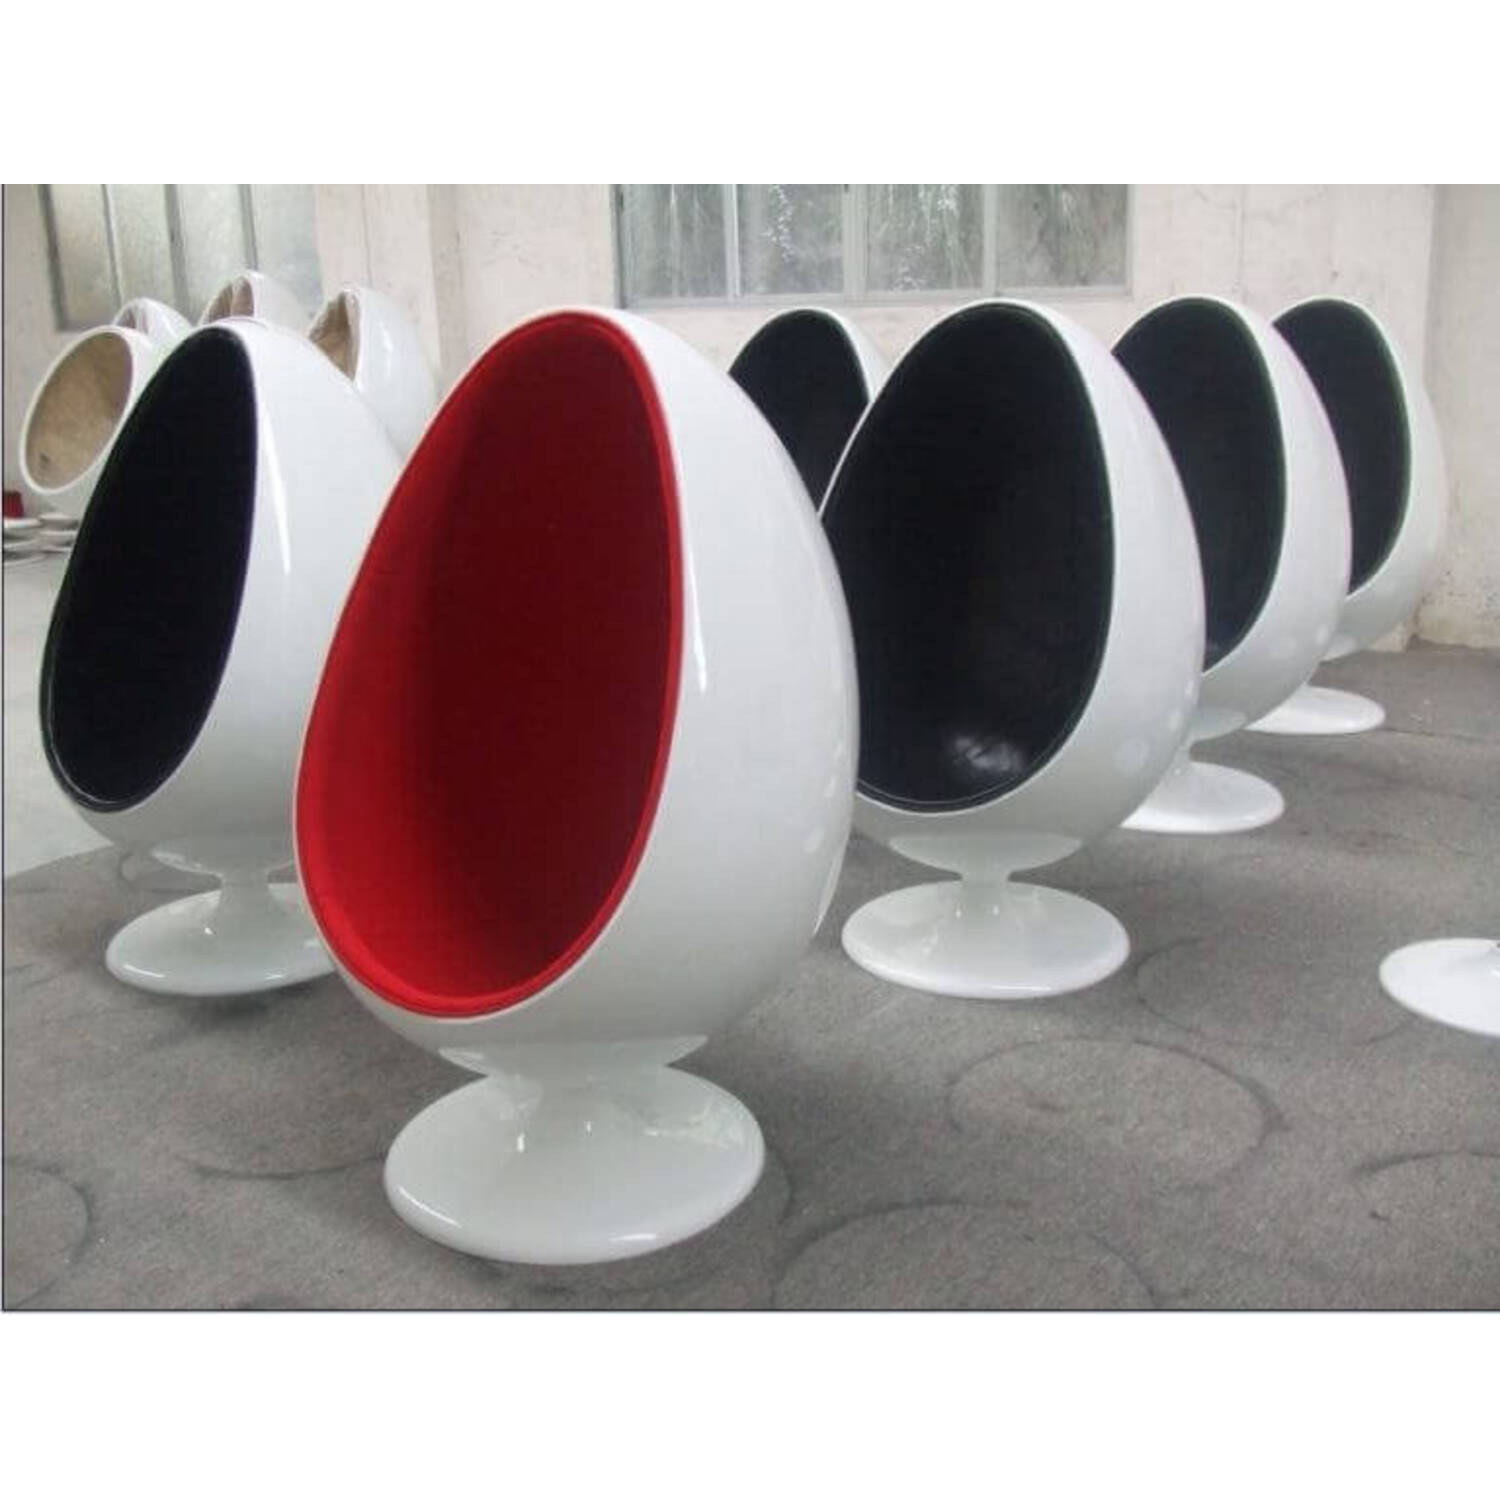 Eero Aarnio Egg Chair бело-черное